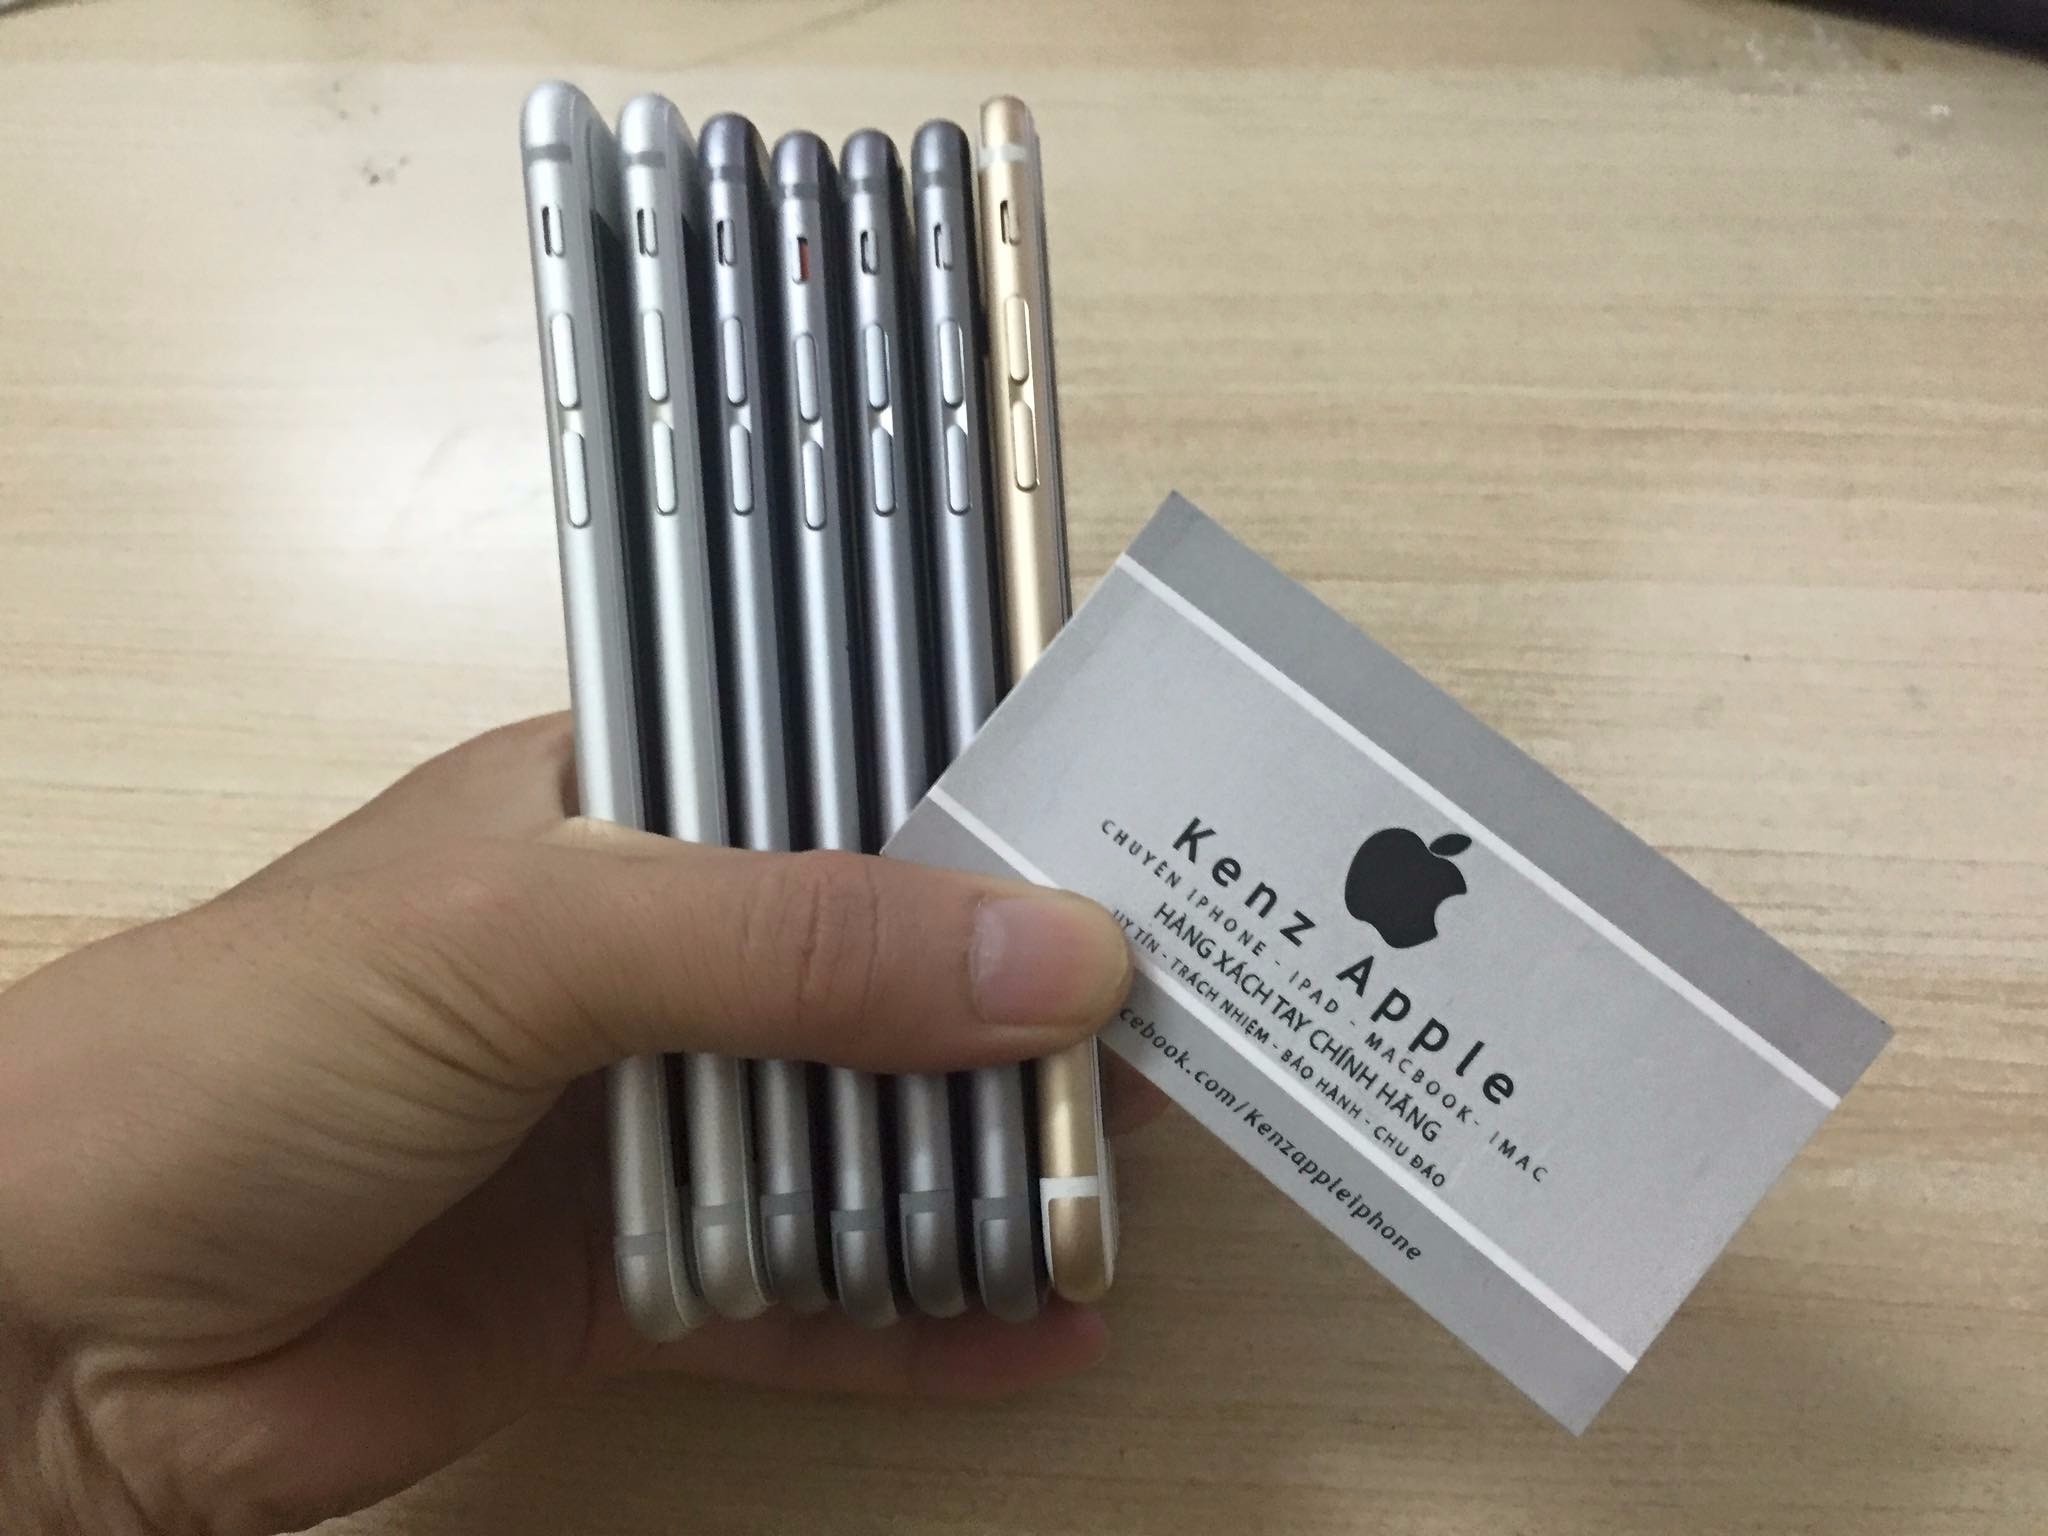 Iphone 6/6 Plus 16/64/128Gb đủ màu giá tốt nhất tại Sài Gòn-->0905665056 - 13